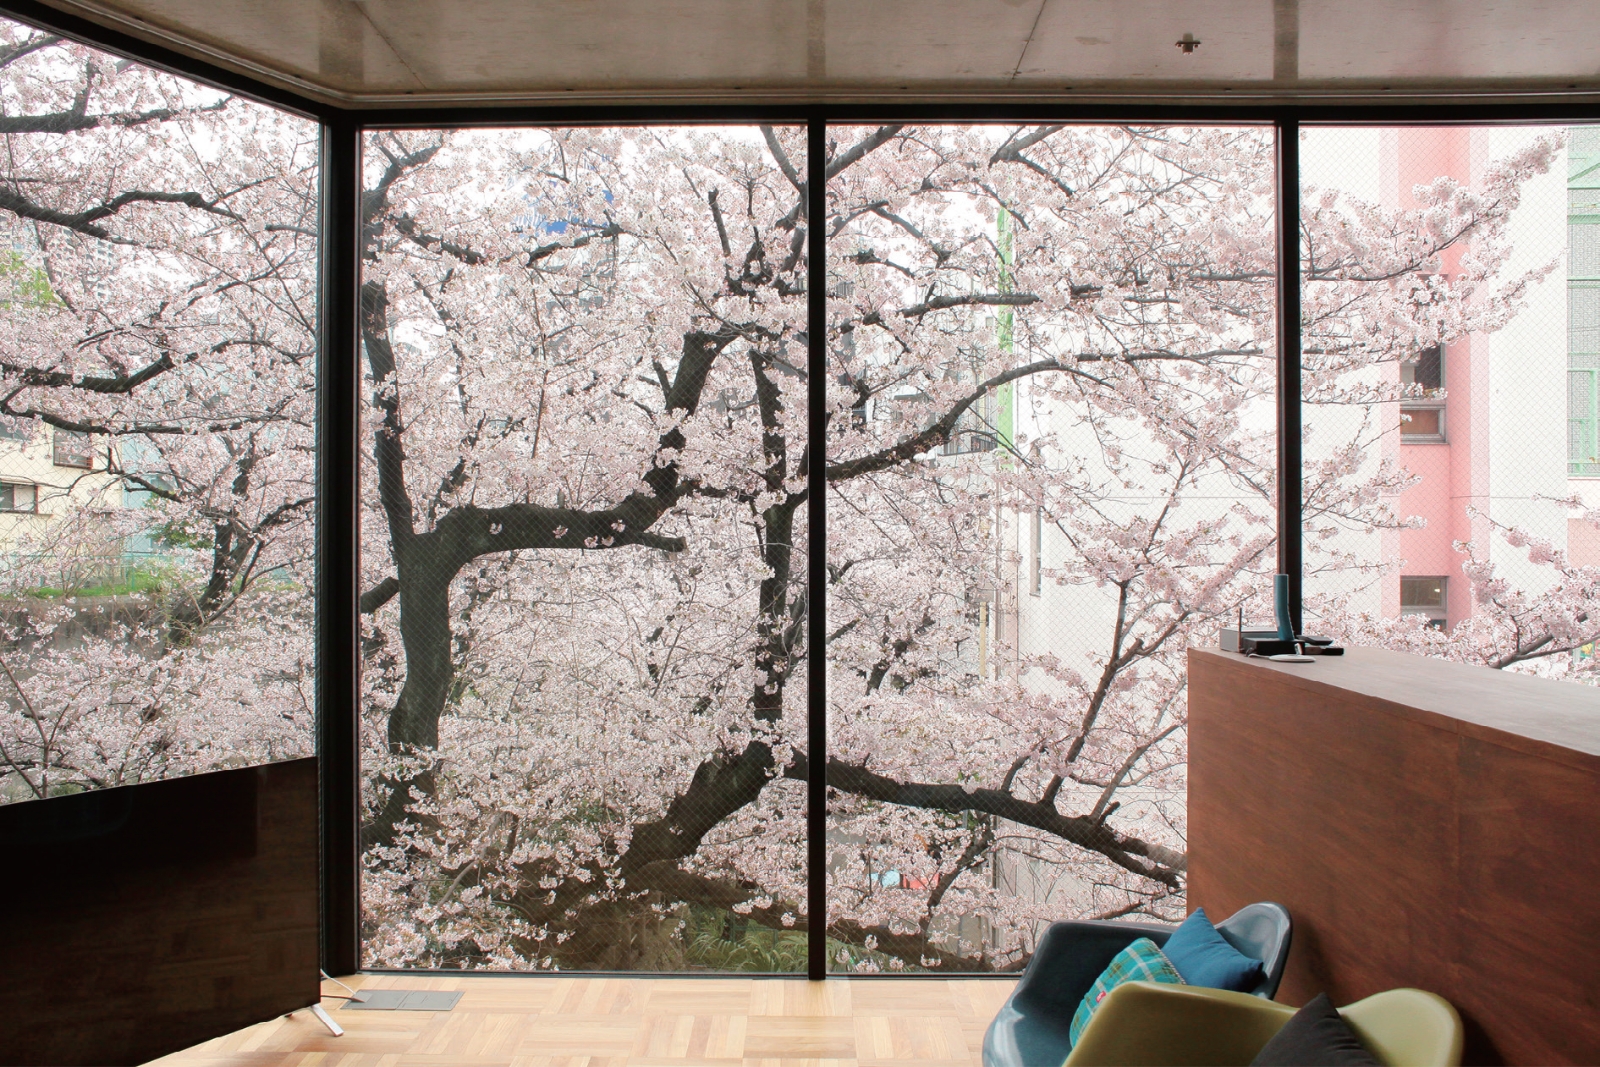 床から天井までの窓は要望通り。 桜の花が屏風 のように美しい。